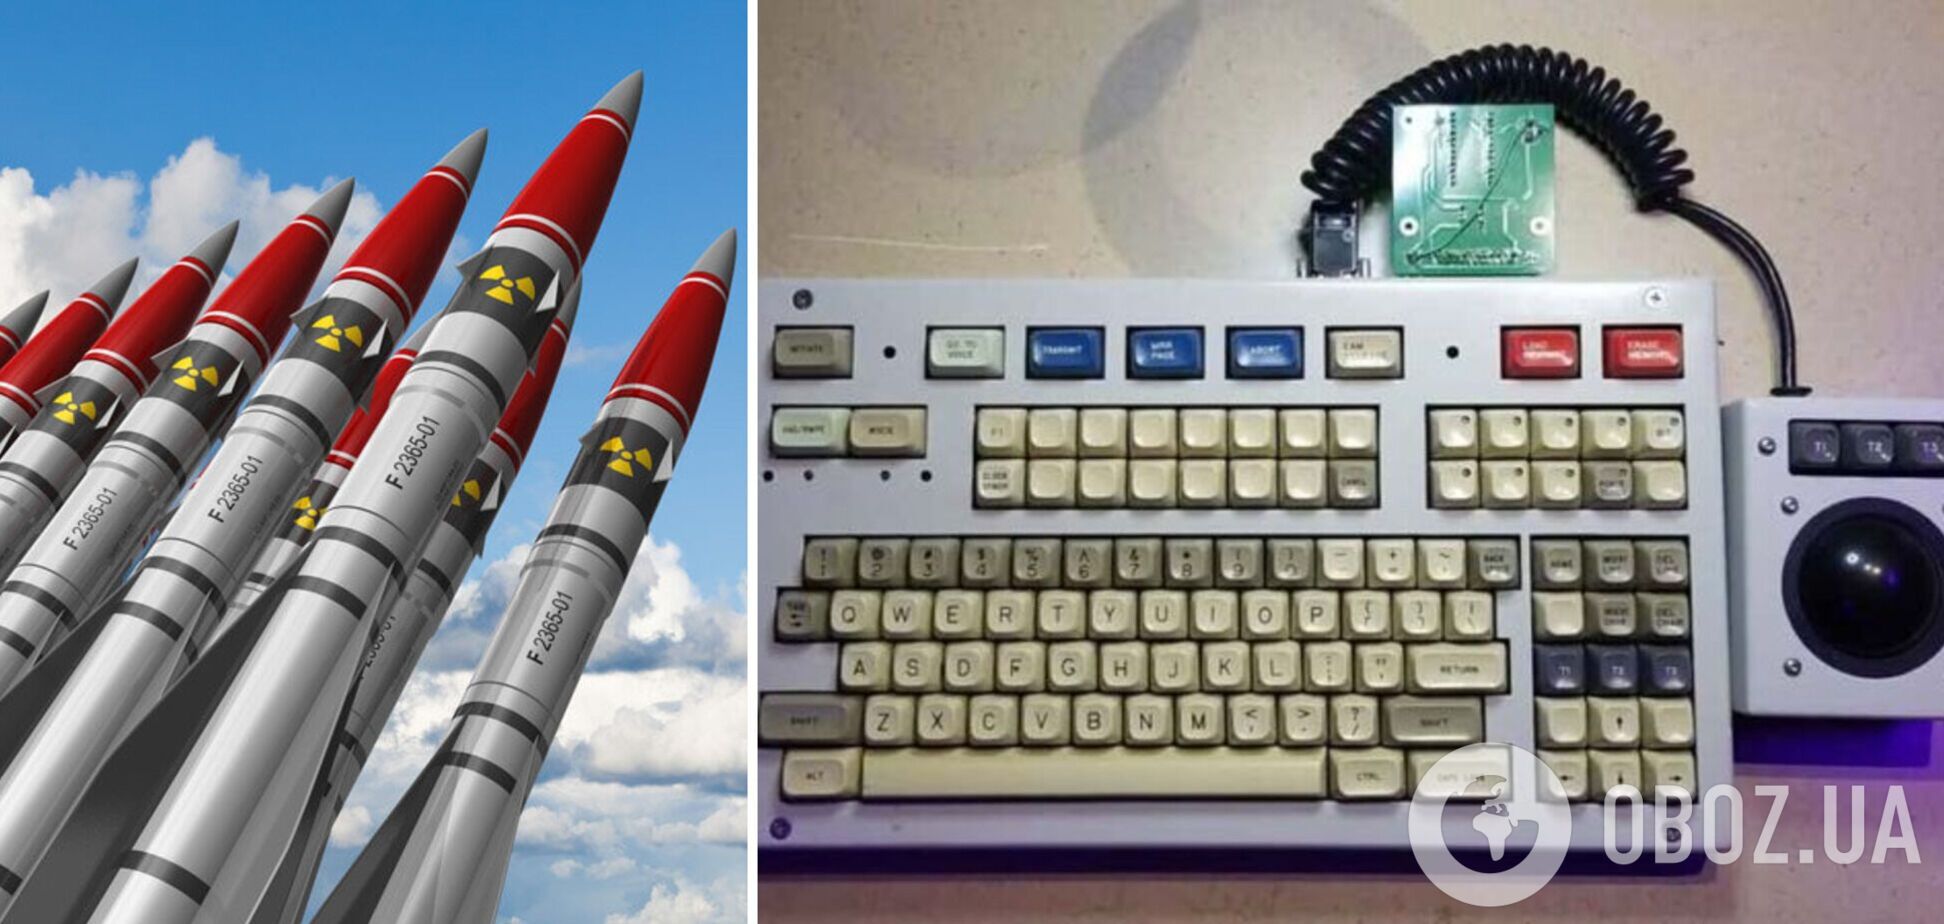 Парень подключил к своему ПК клавиатуру от системы управления пуском ядерных ракет: что с этого вышло. Видео